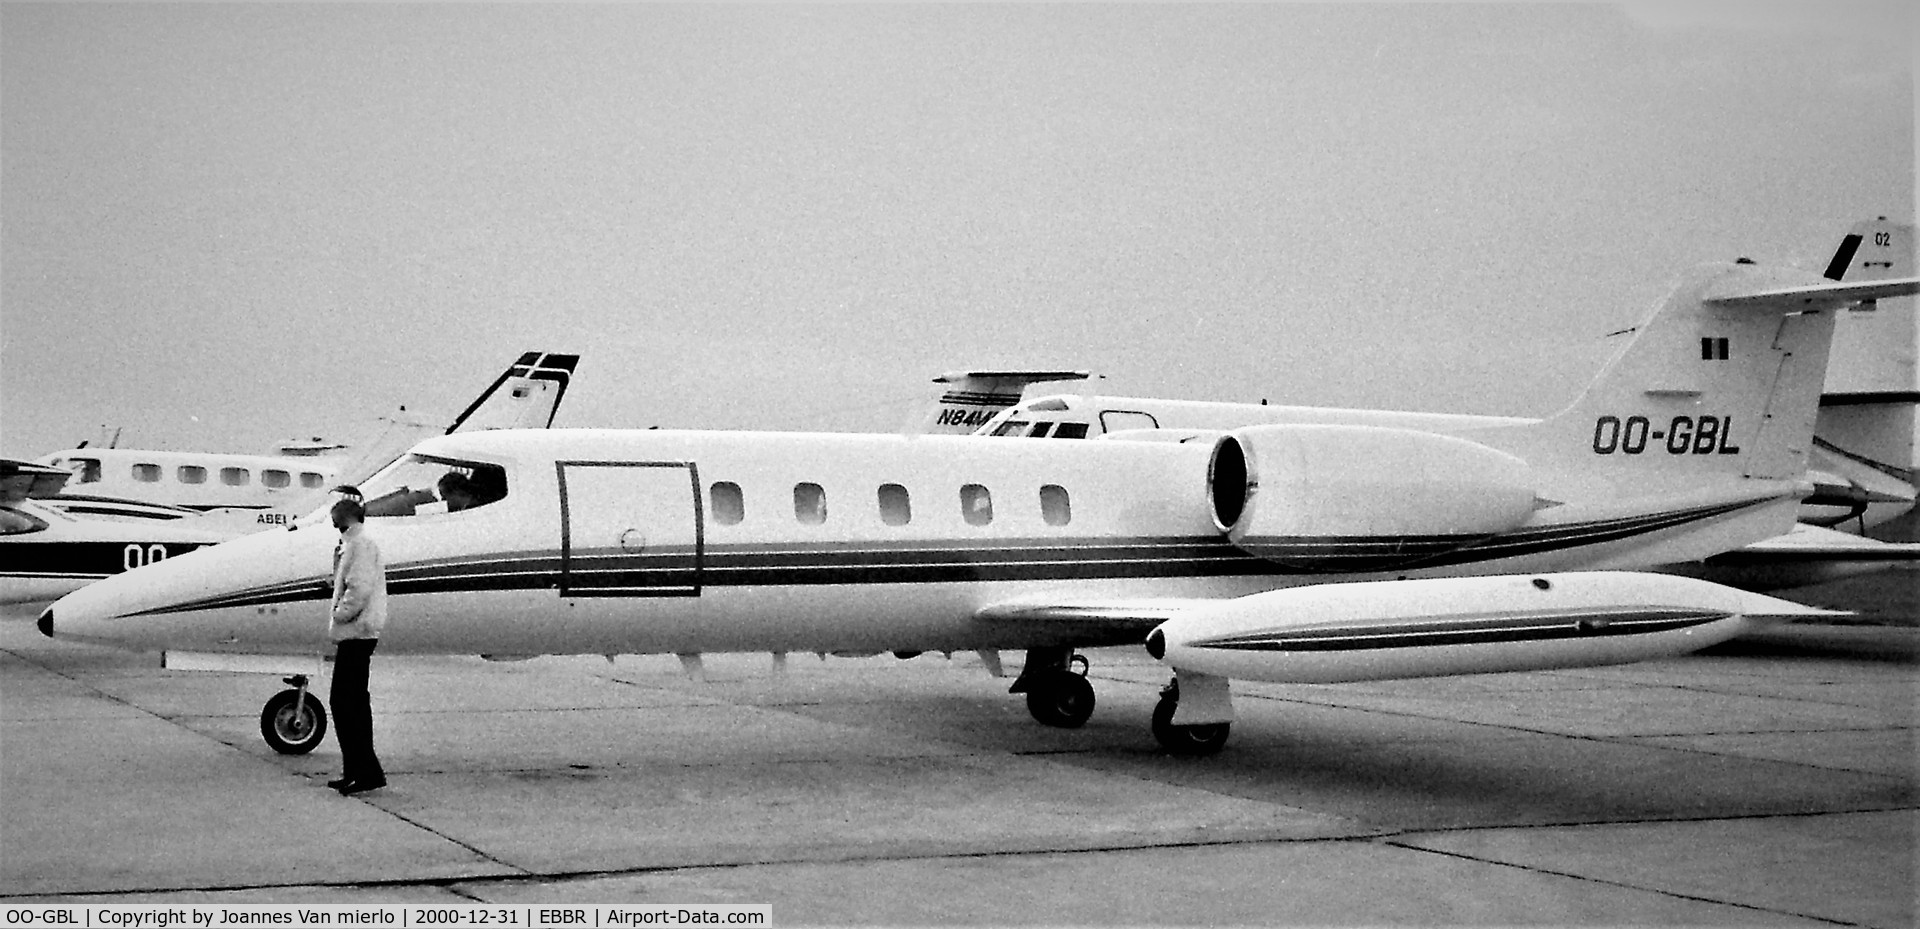 OO-GBL, 1980 Learjet 35A C/N 284, Brussels